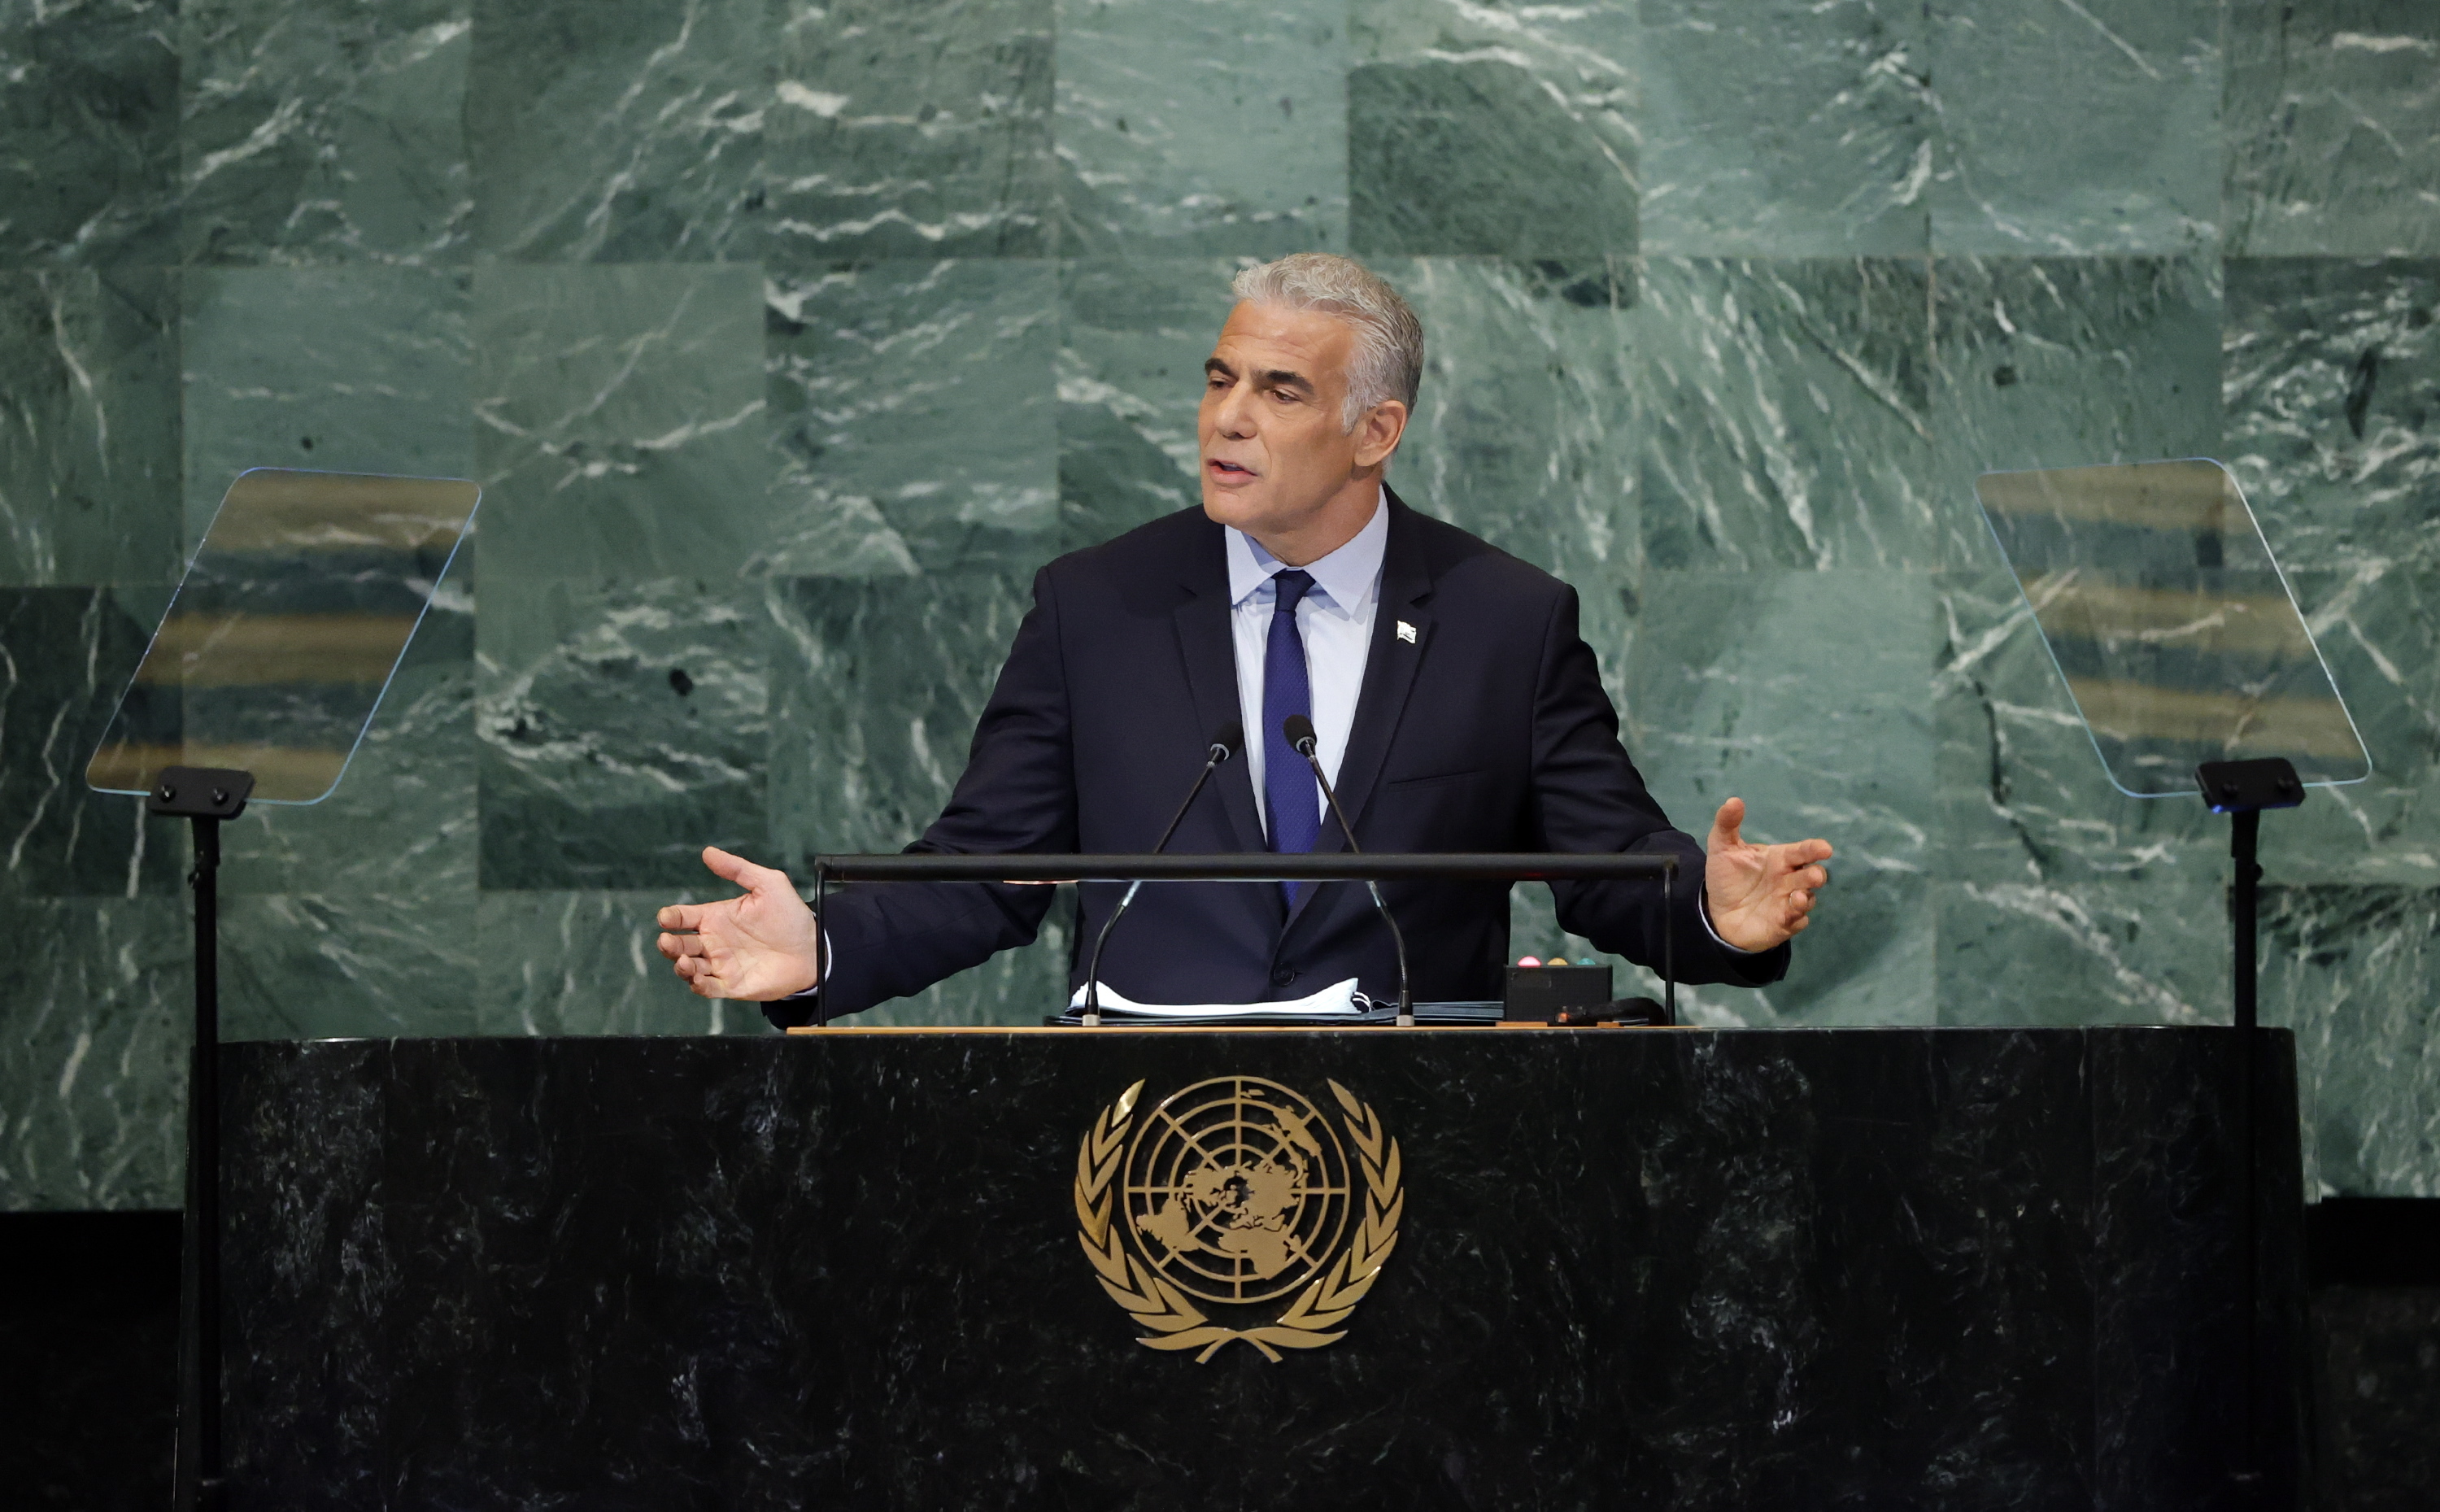 Lapid apoya en la ONU un acuerdo de paz con los palestinos basado en la solución de dos Estados